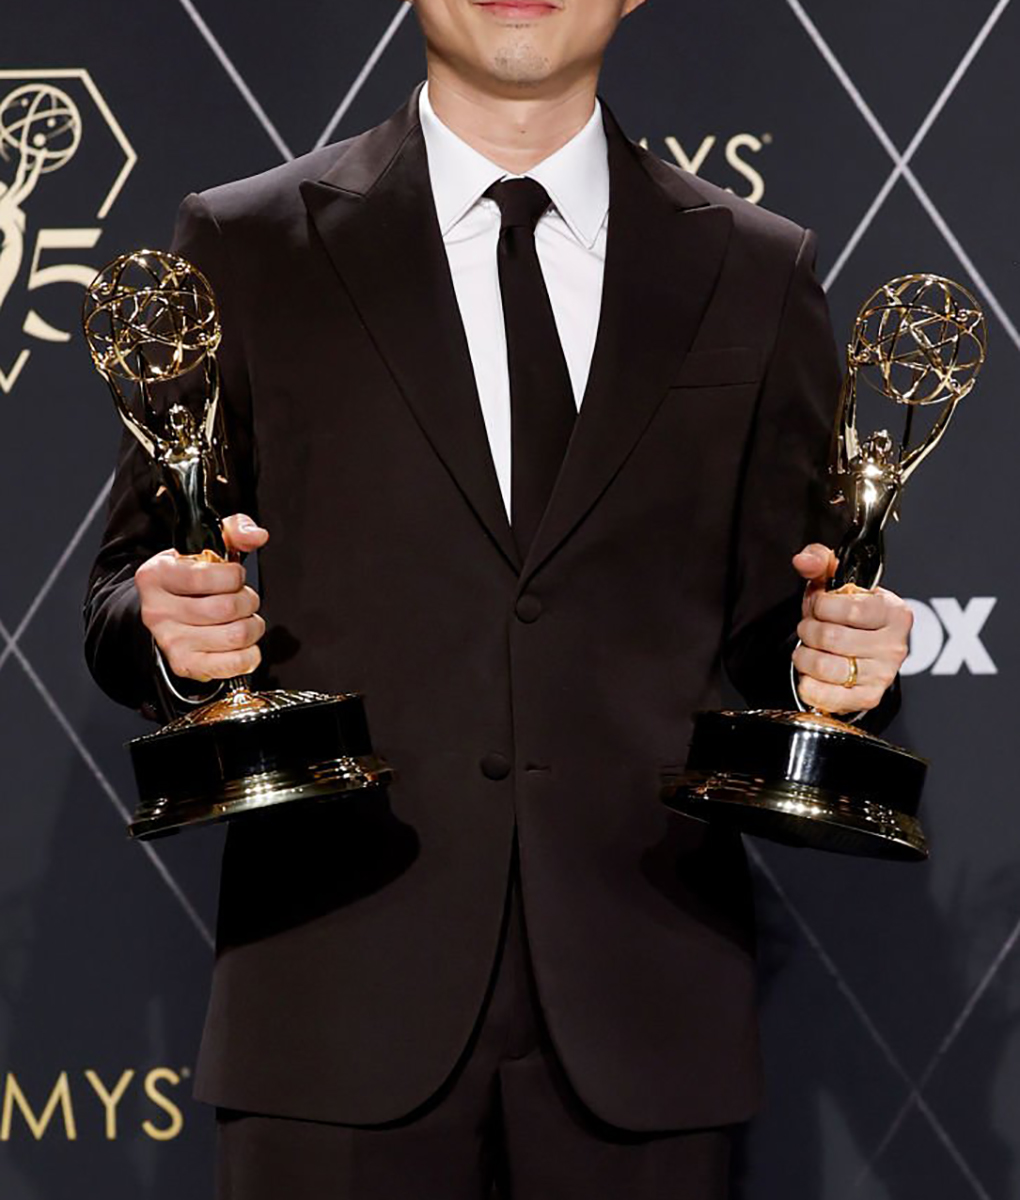 Steven Yeun 75 Emmys Awards Suit (2)